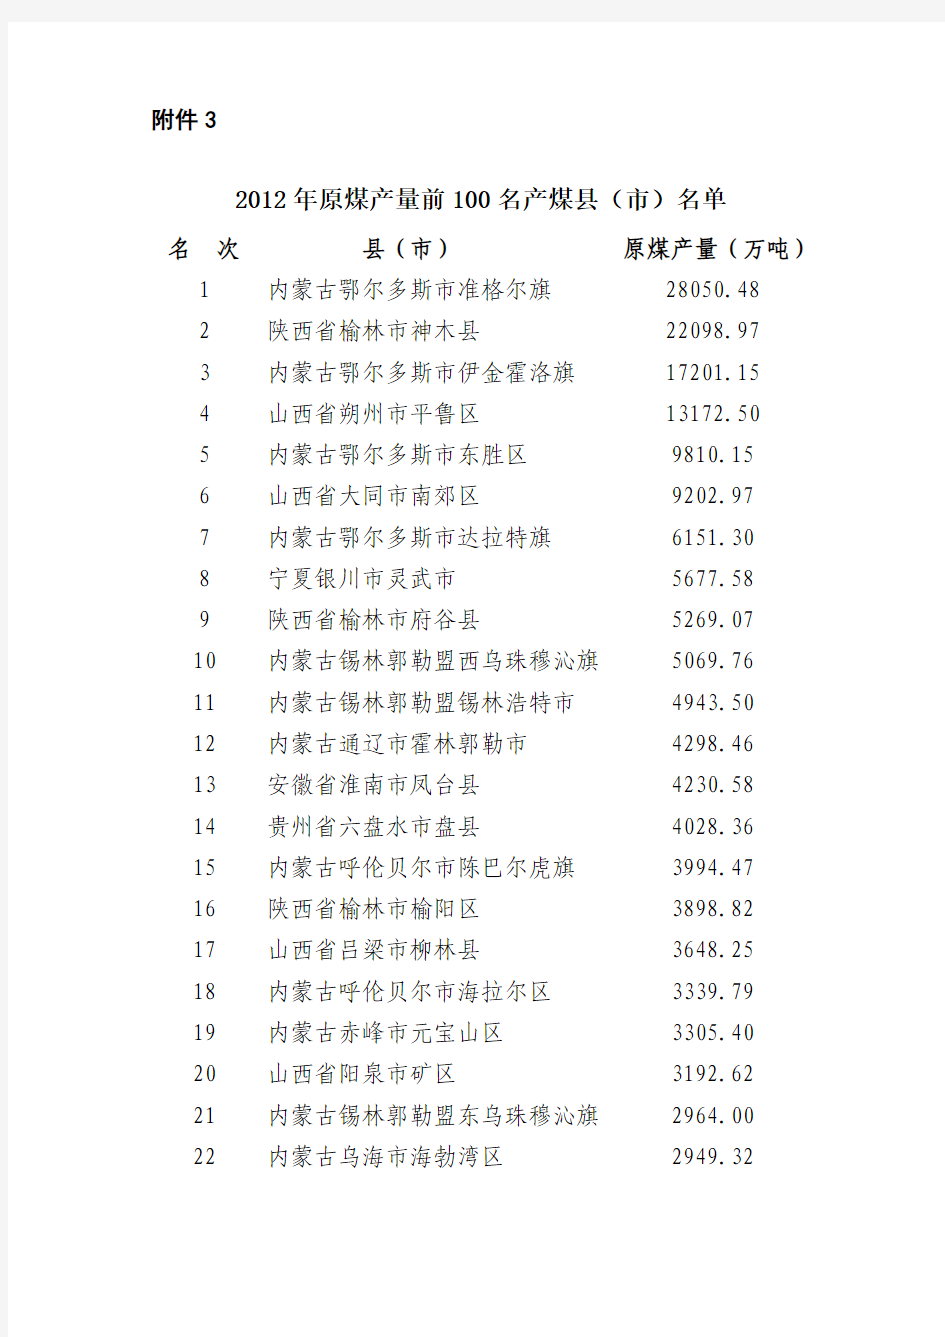 2012年全国原煤产量100强(县、市)